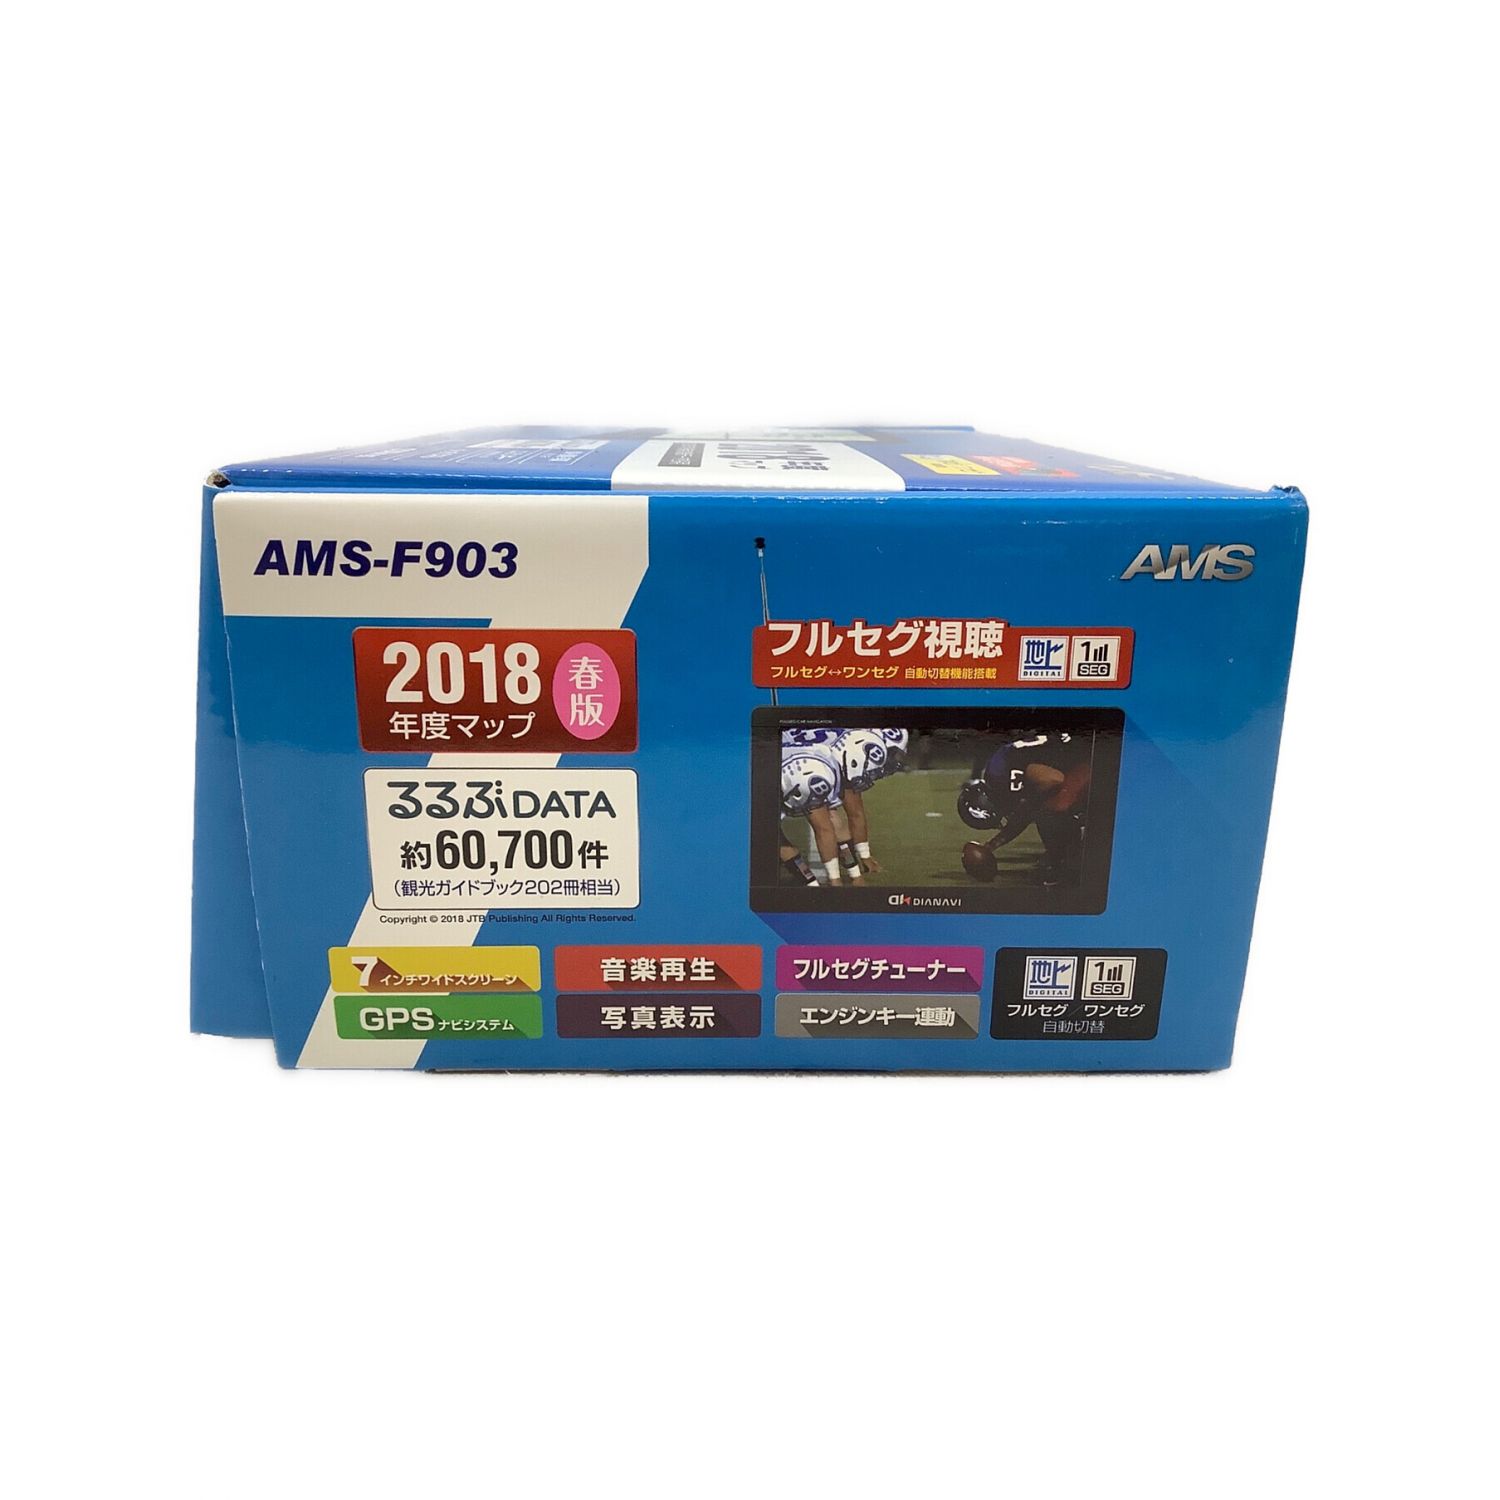 AMS 7インチフルセグポータブルカーナビ AMS-F903 2018年製 AMSF903